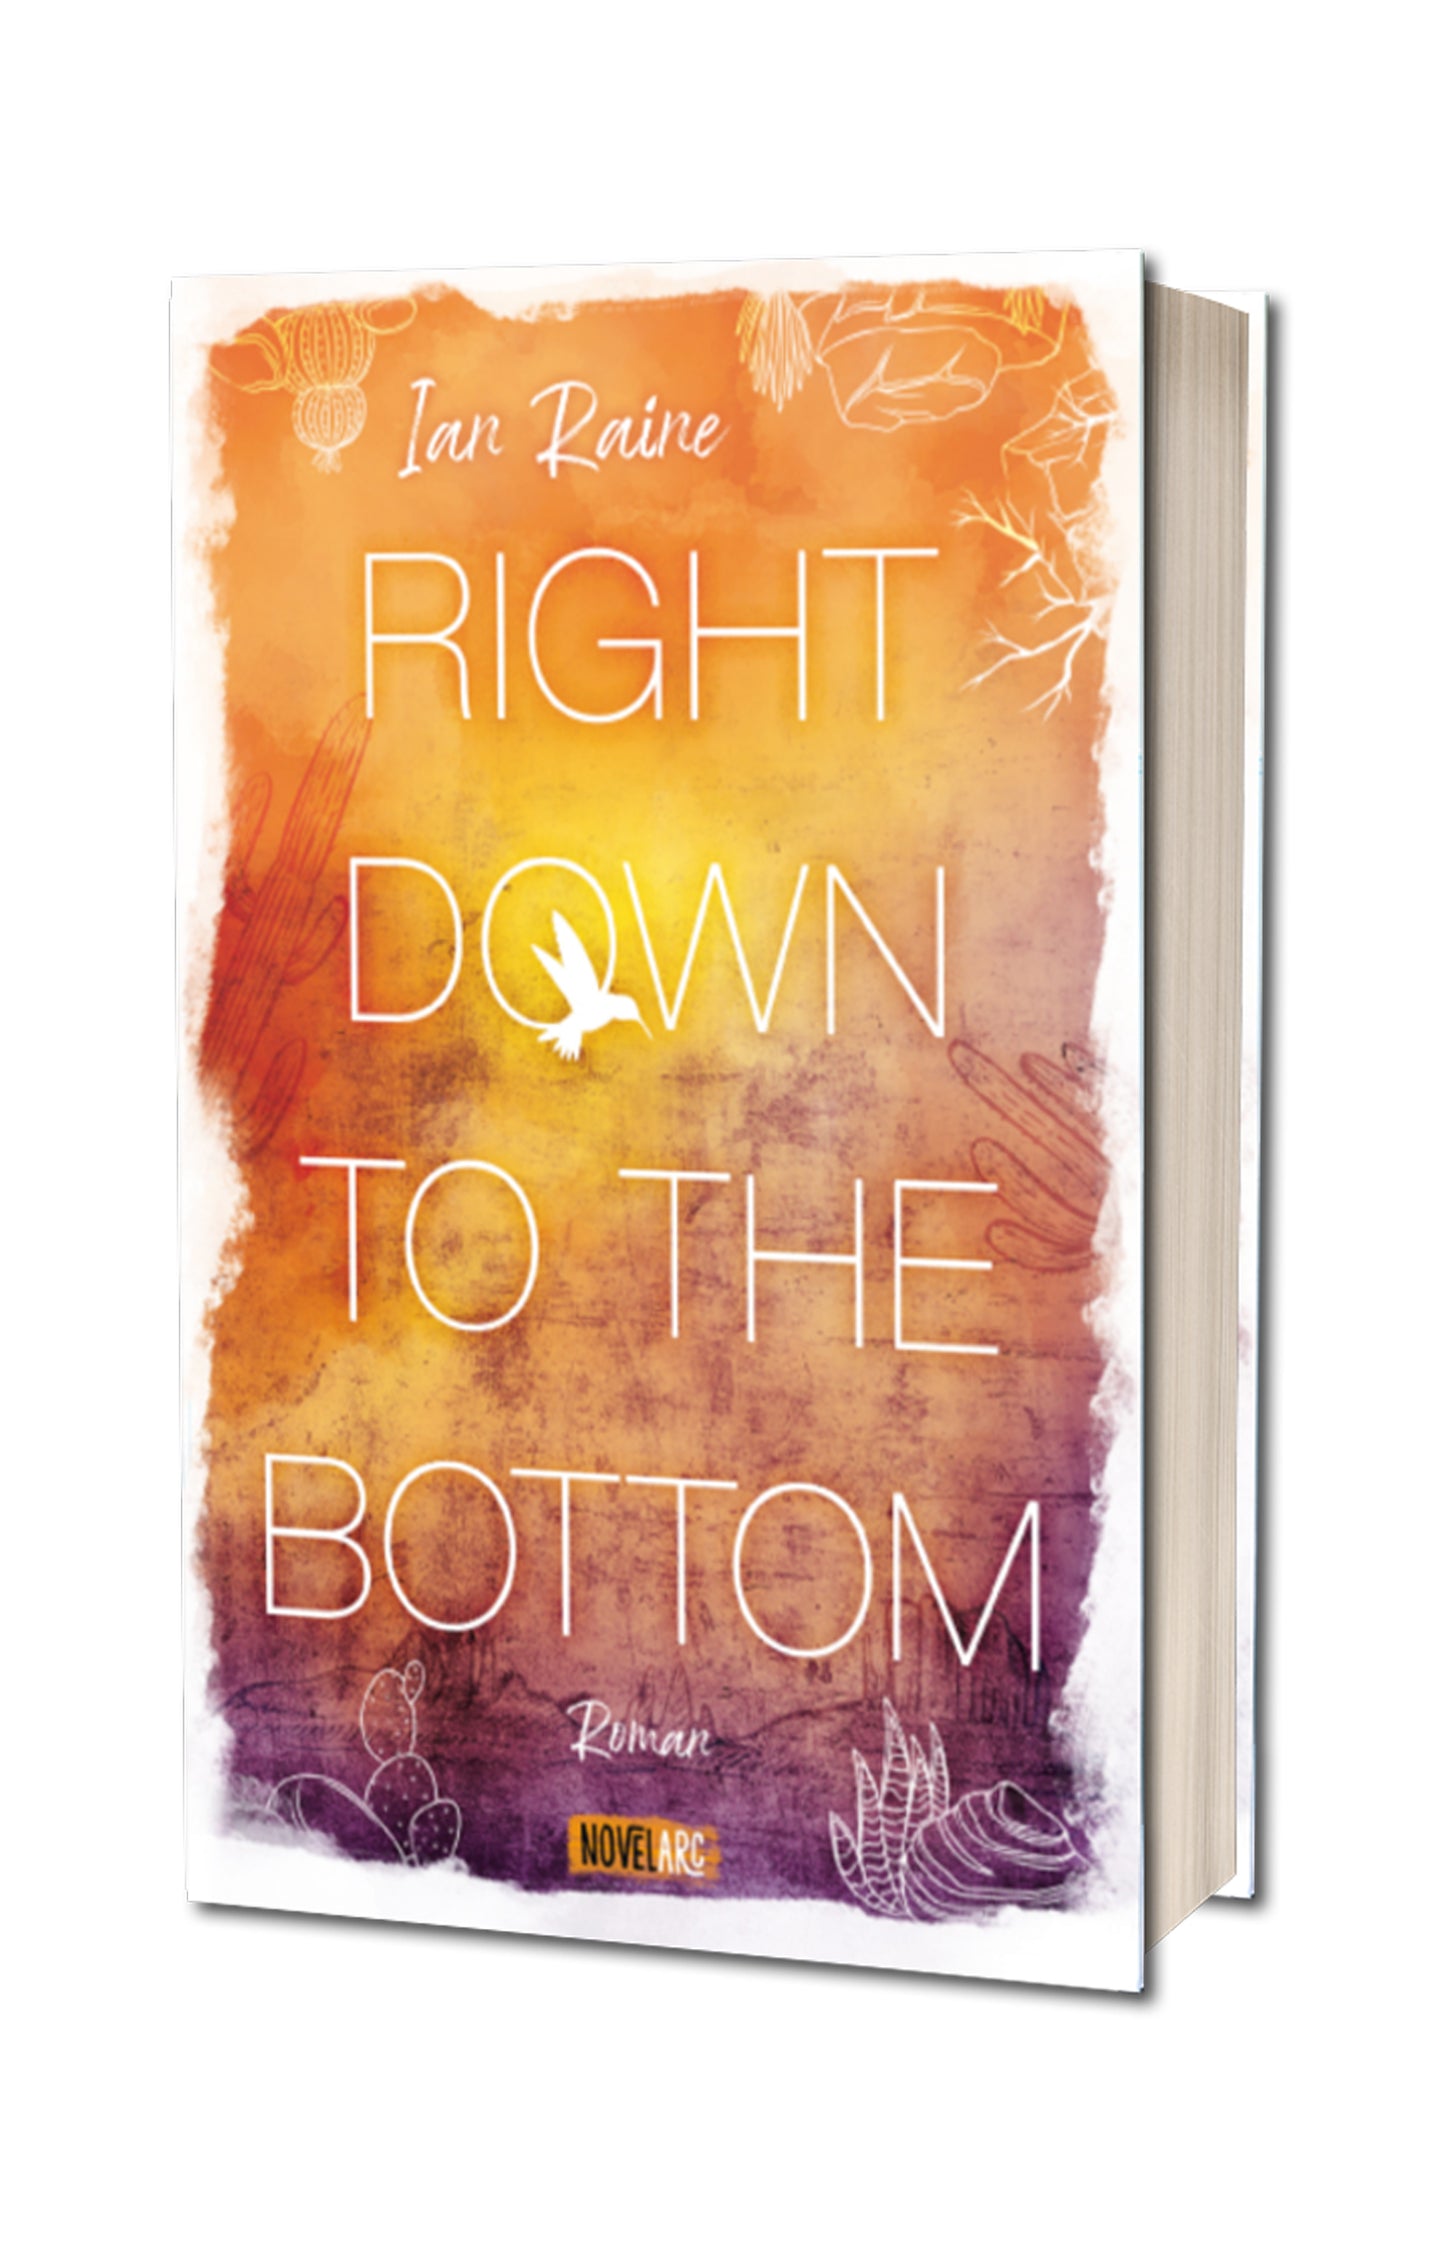 Right Down to the Bottom: Ein einfühlsam erzählter queerer New-Adult-Roman in der Wüste Arizonas.